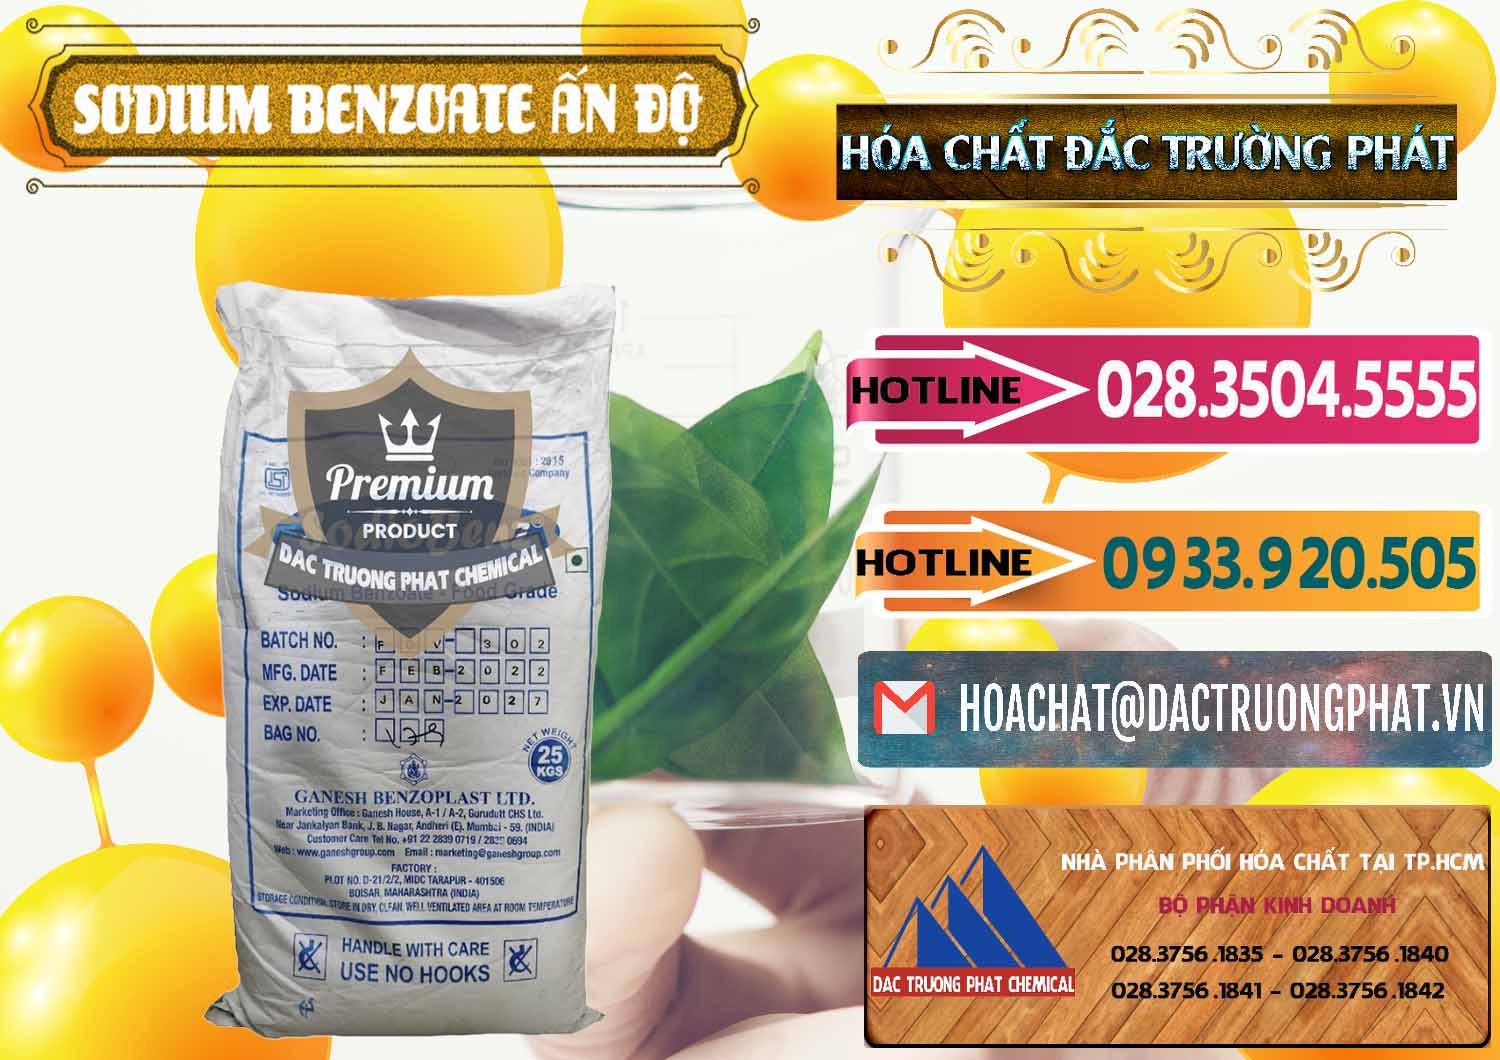 Công ty bán & cung cấp Sodium Benzoate - Mốc Bột Ấn Độ India - 0361 - Cty cung cấp và phân phối hóa chất tại TP.HCM - dactruongphat.vn